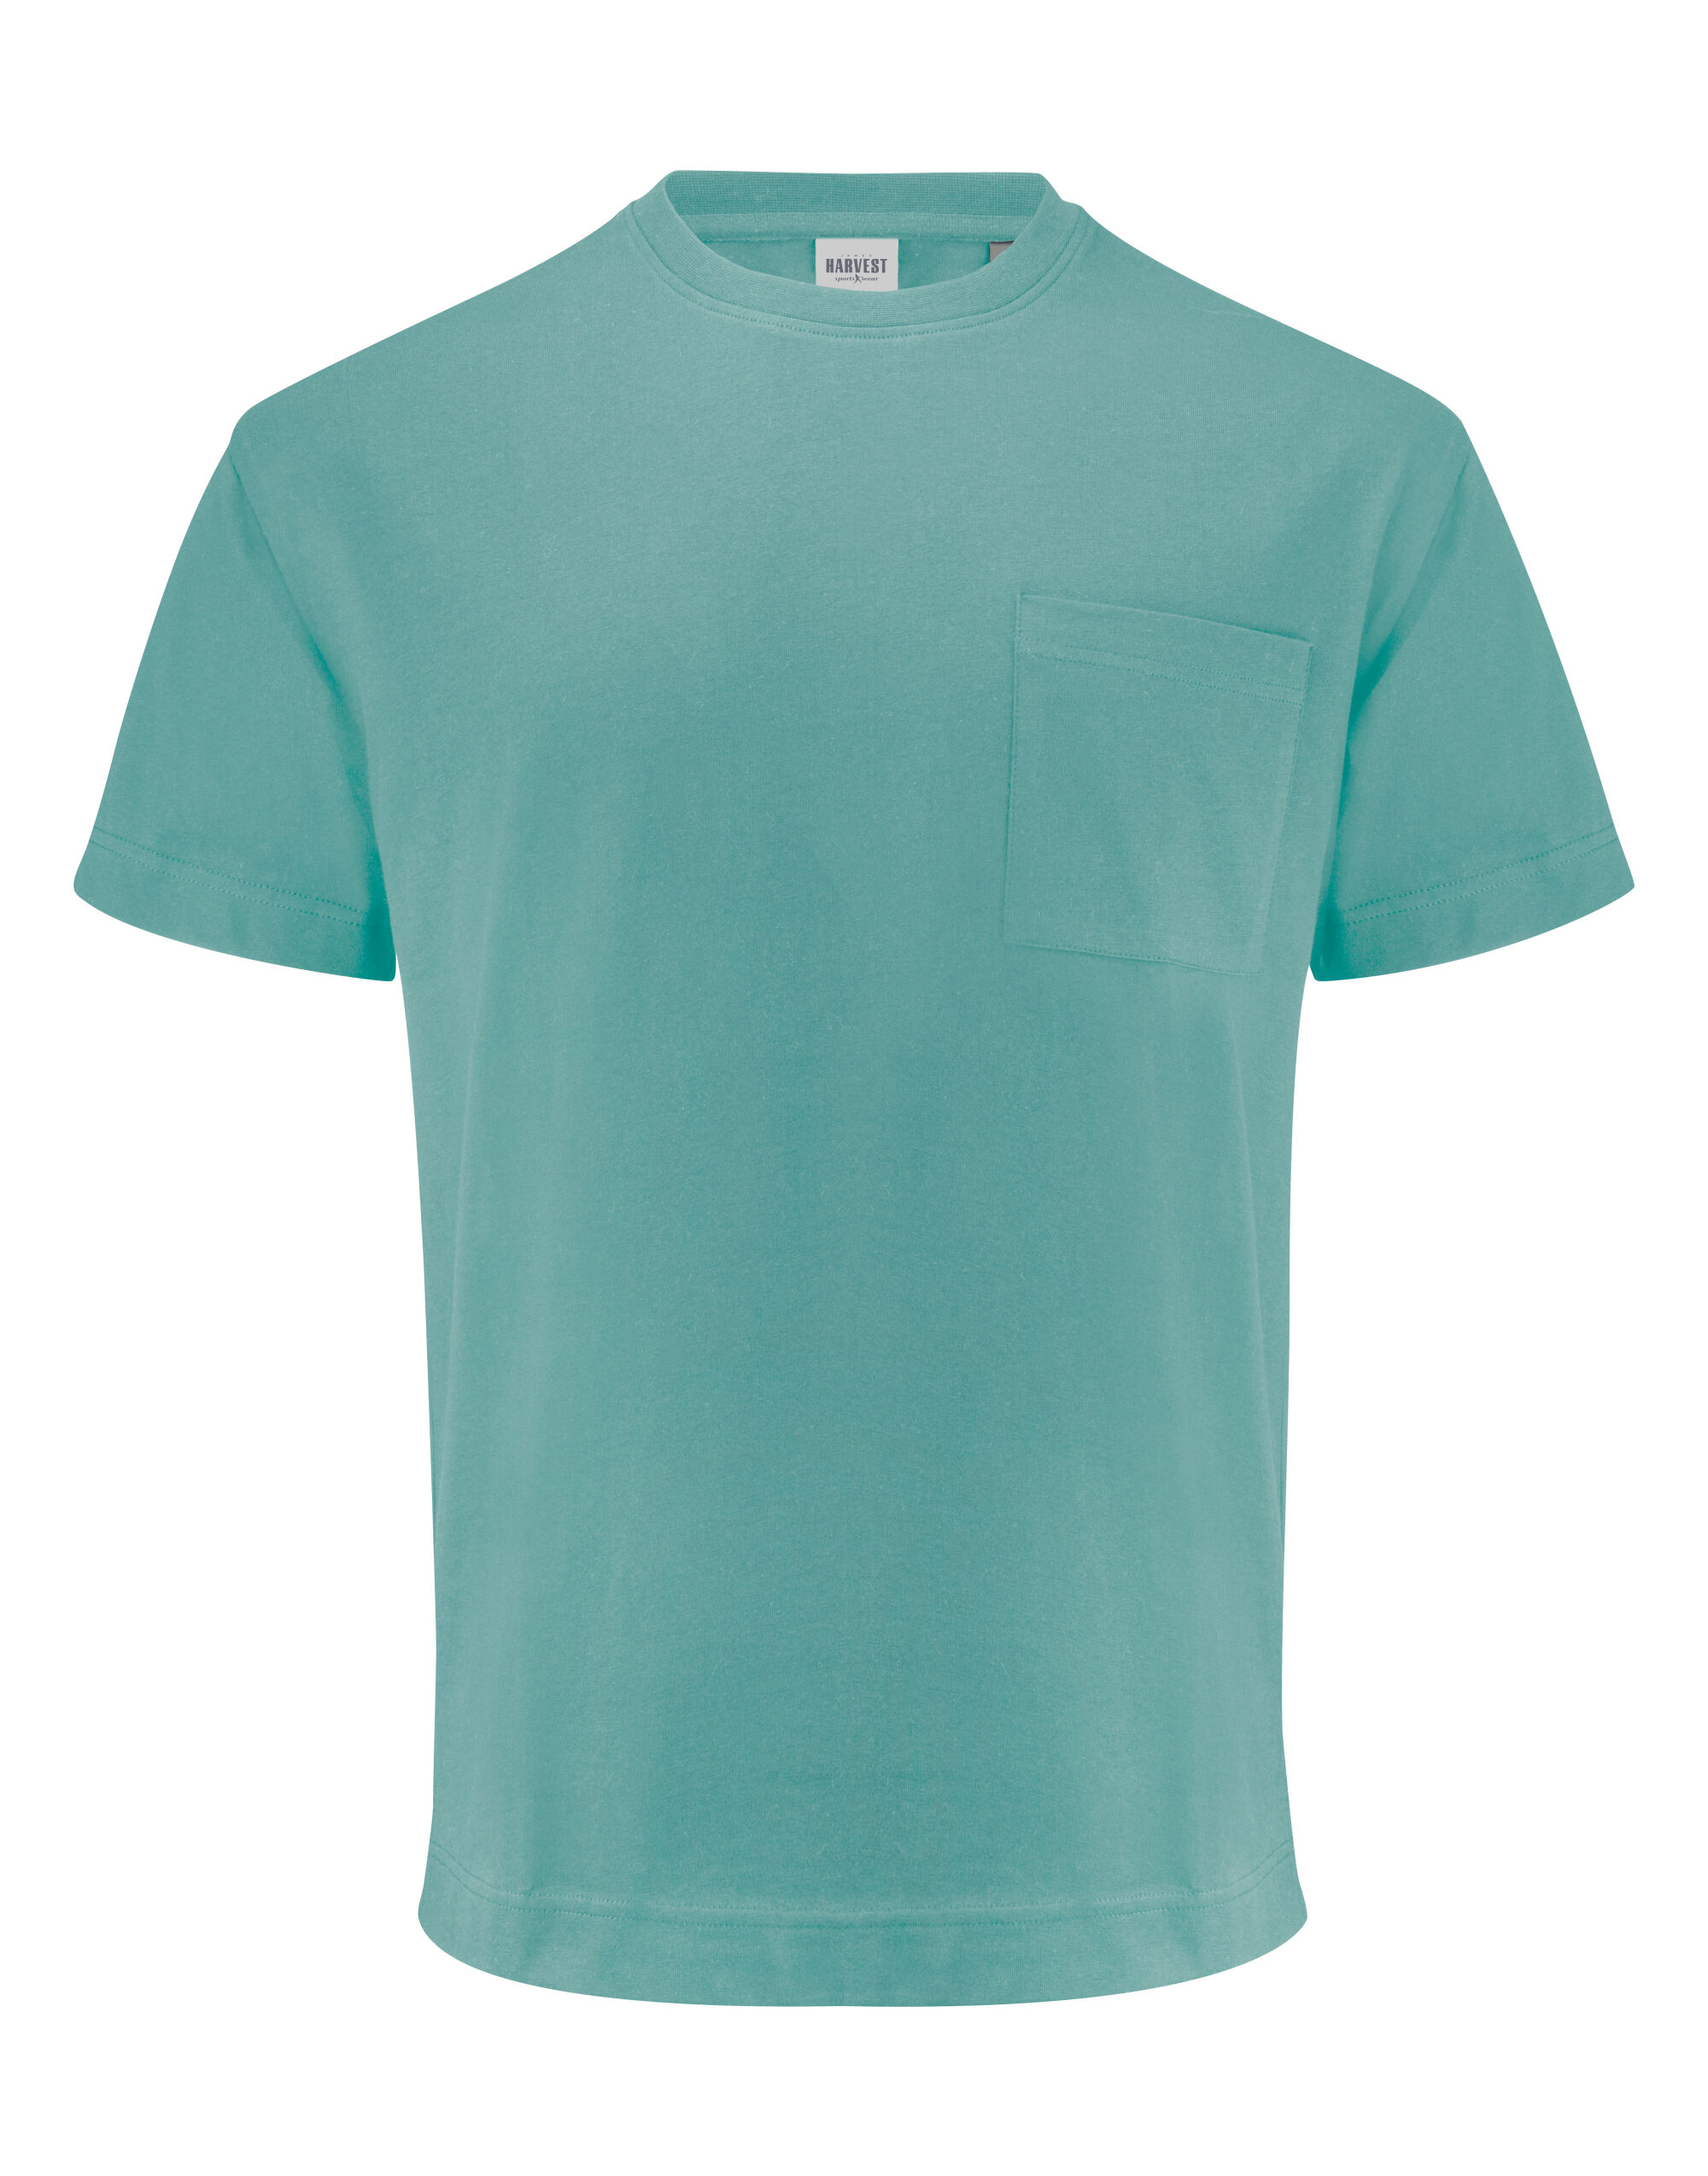 Devons Pocket Unisex T-Shirt